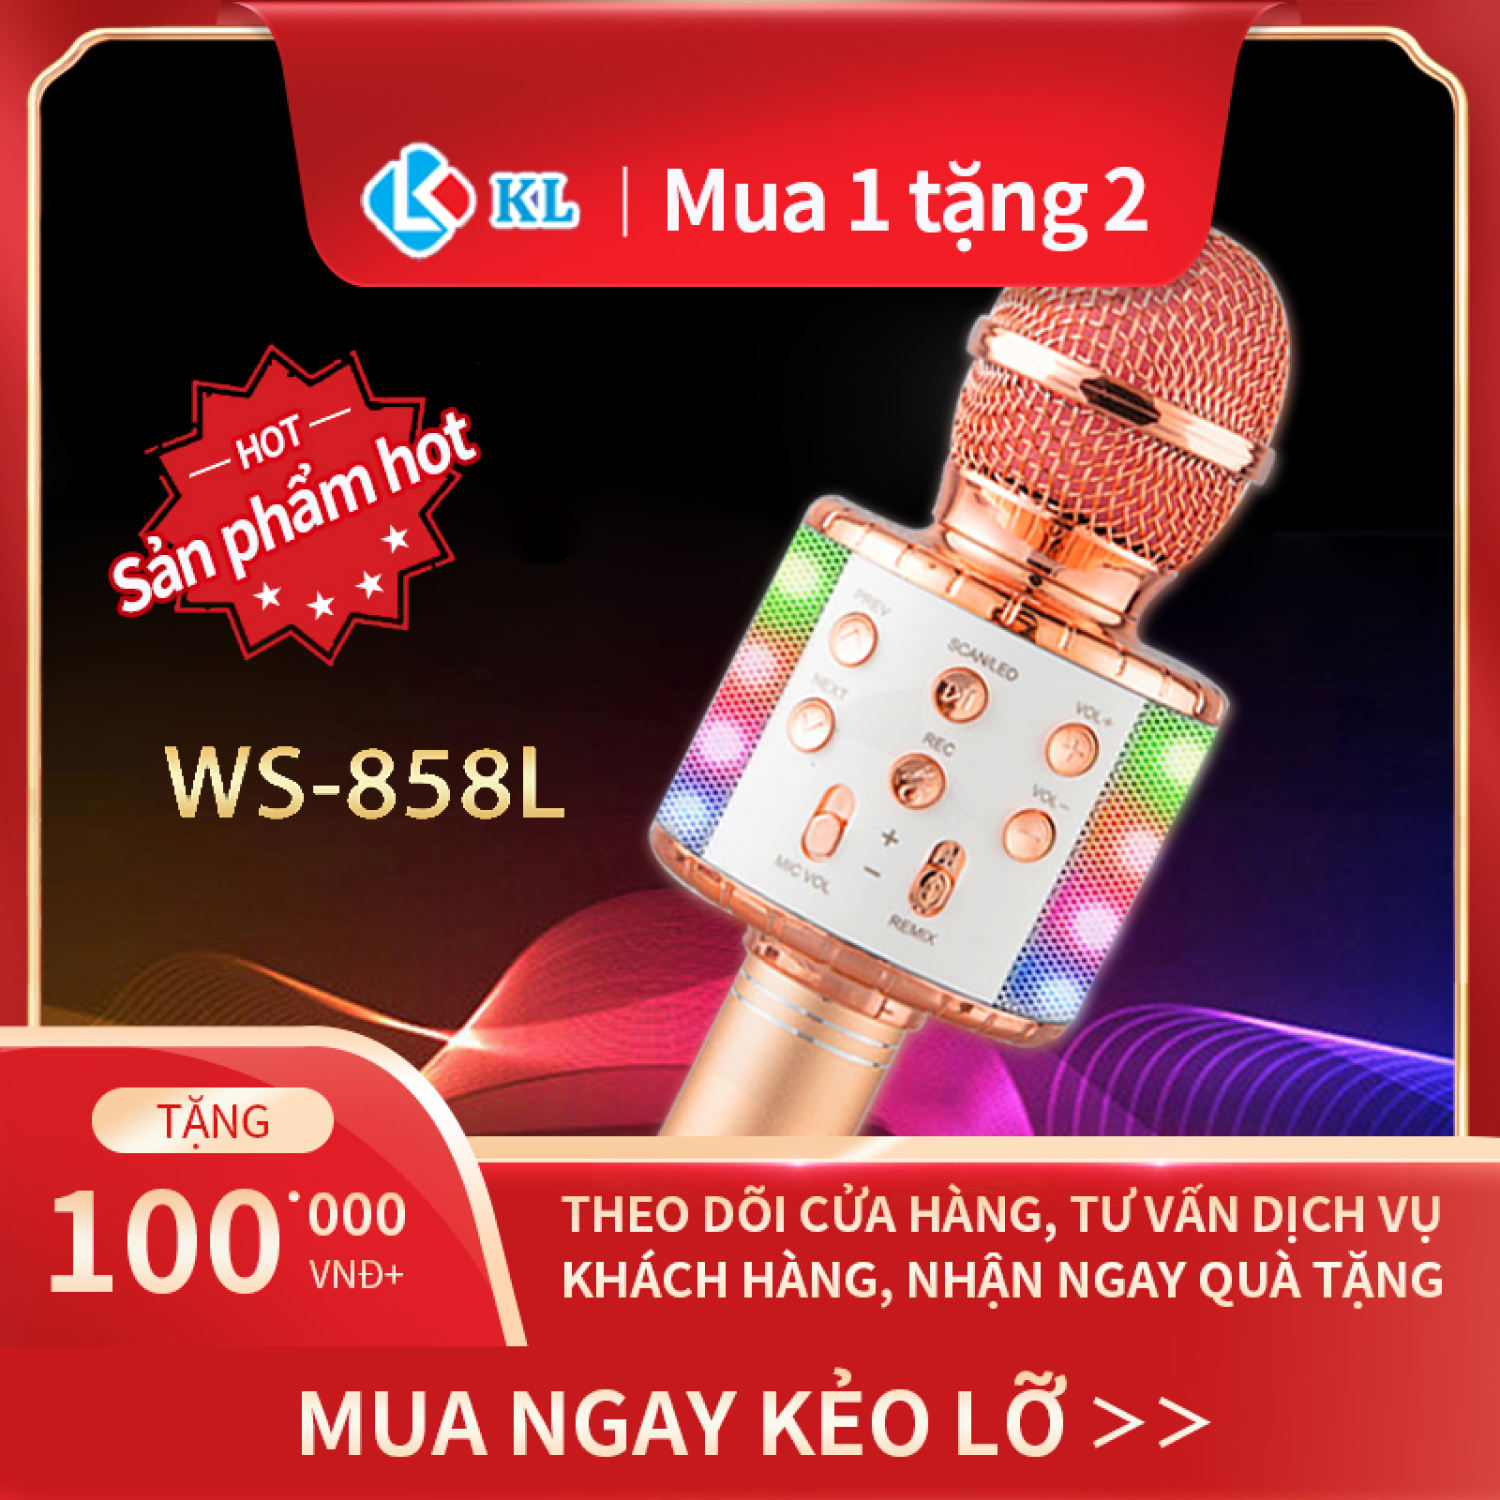 (lᴏại 1)Hot Hot Giảm giá 50%, Mic Hát karaoke kết nối Bluetooth KL không dây WS-858L, micro không dây, micro karaoke bluetooth, micro live stream, micro không dây bluetooth Đèn Led theo nhạc